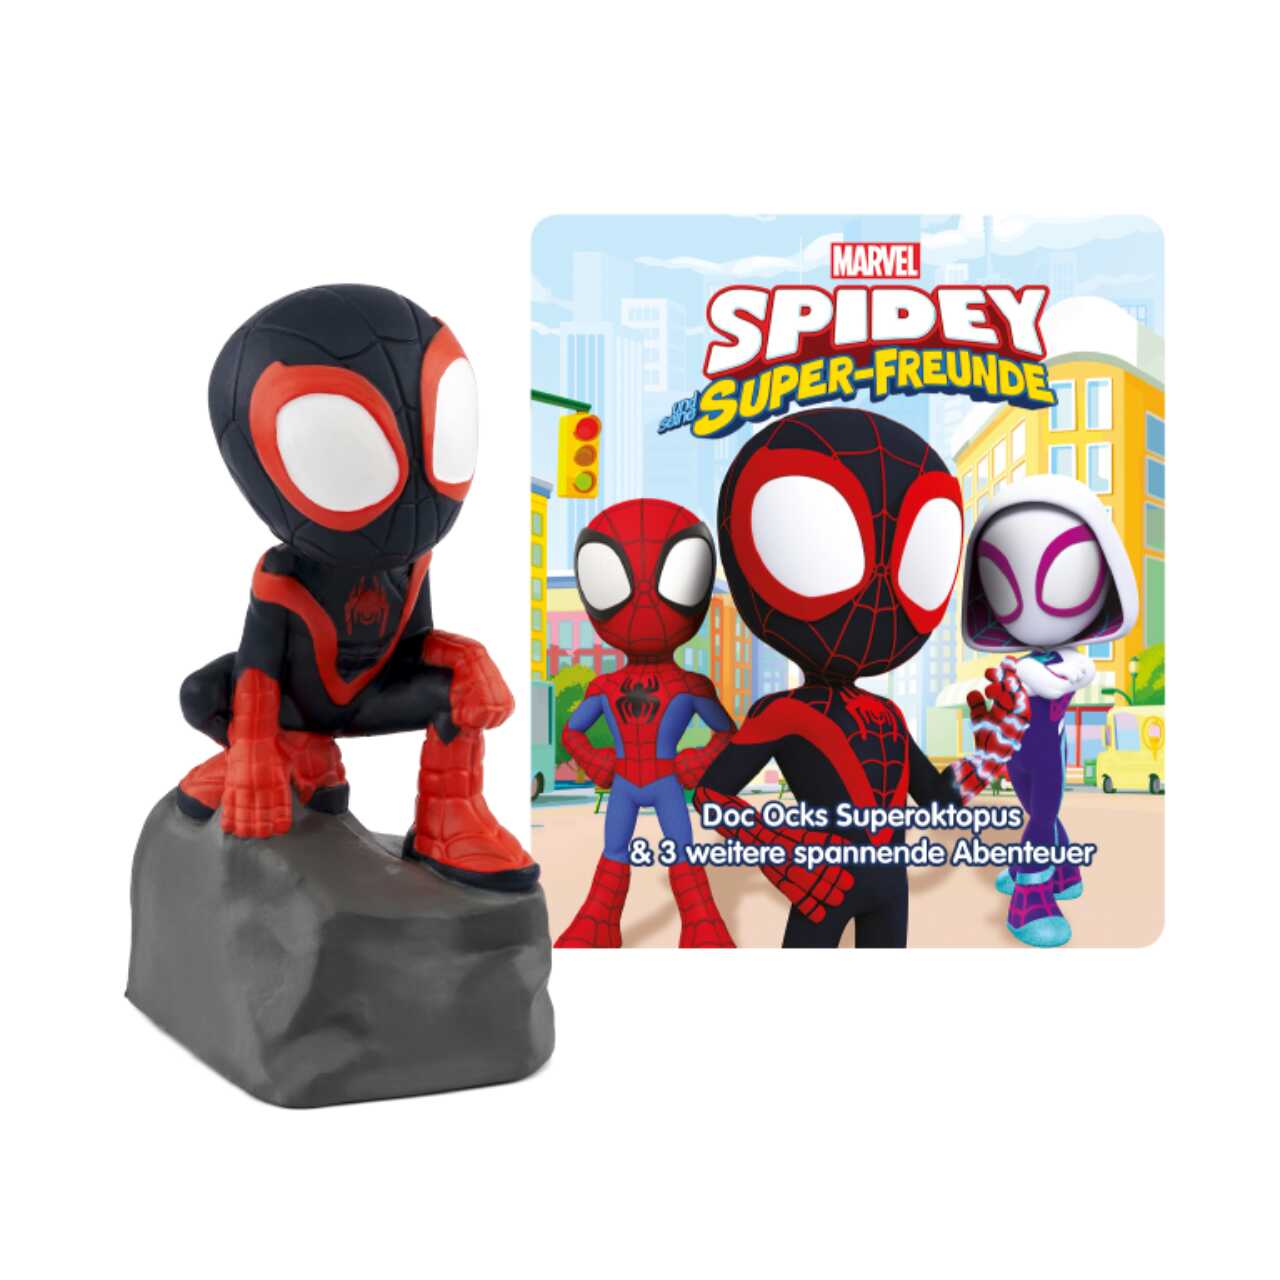 Produktbild TONIES 11000465 - Hörspiel - Marvel Spidey und seine Super-Freunde, Doc Ocks Superoktopus